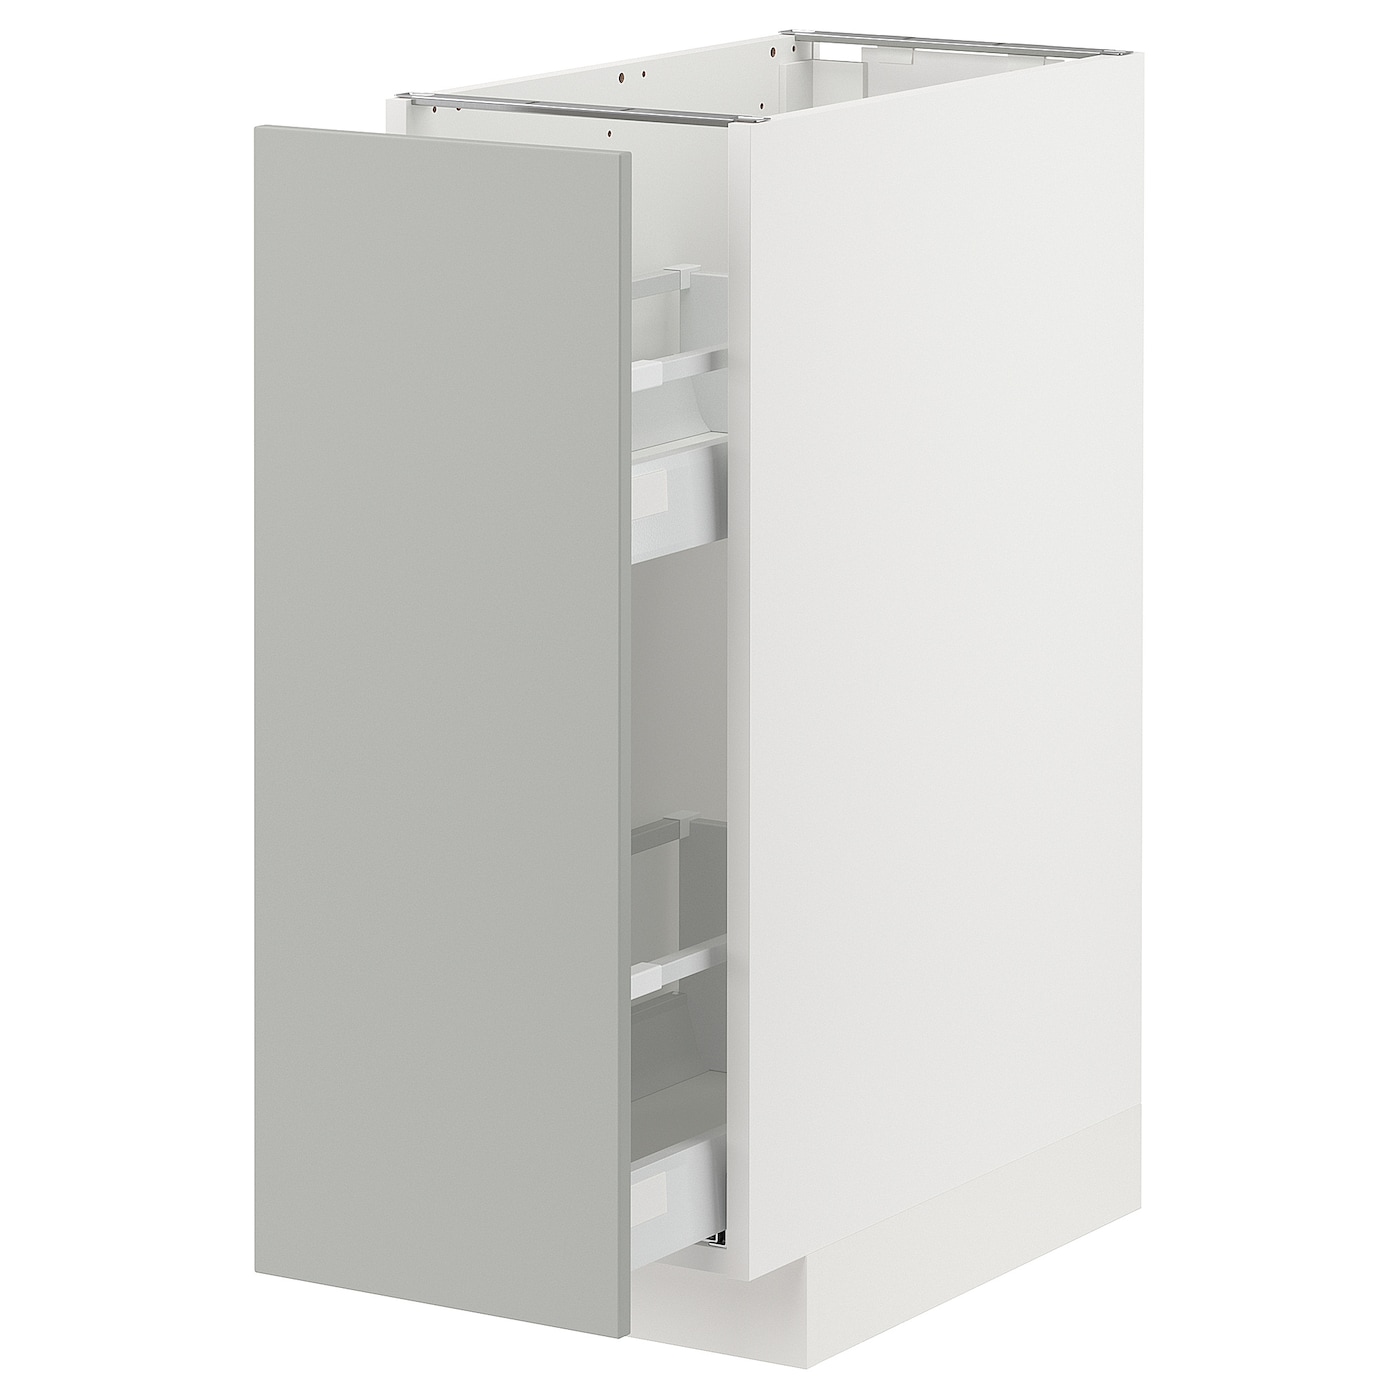 Напольный шкаф - METOD / MAXIMERA IKEA/ МЕТОД/ МАКСИМЕРА ИКЕА,  30х88 см, белый/светло-серый